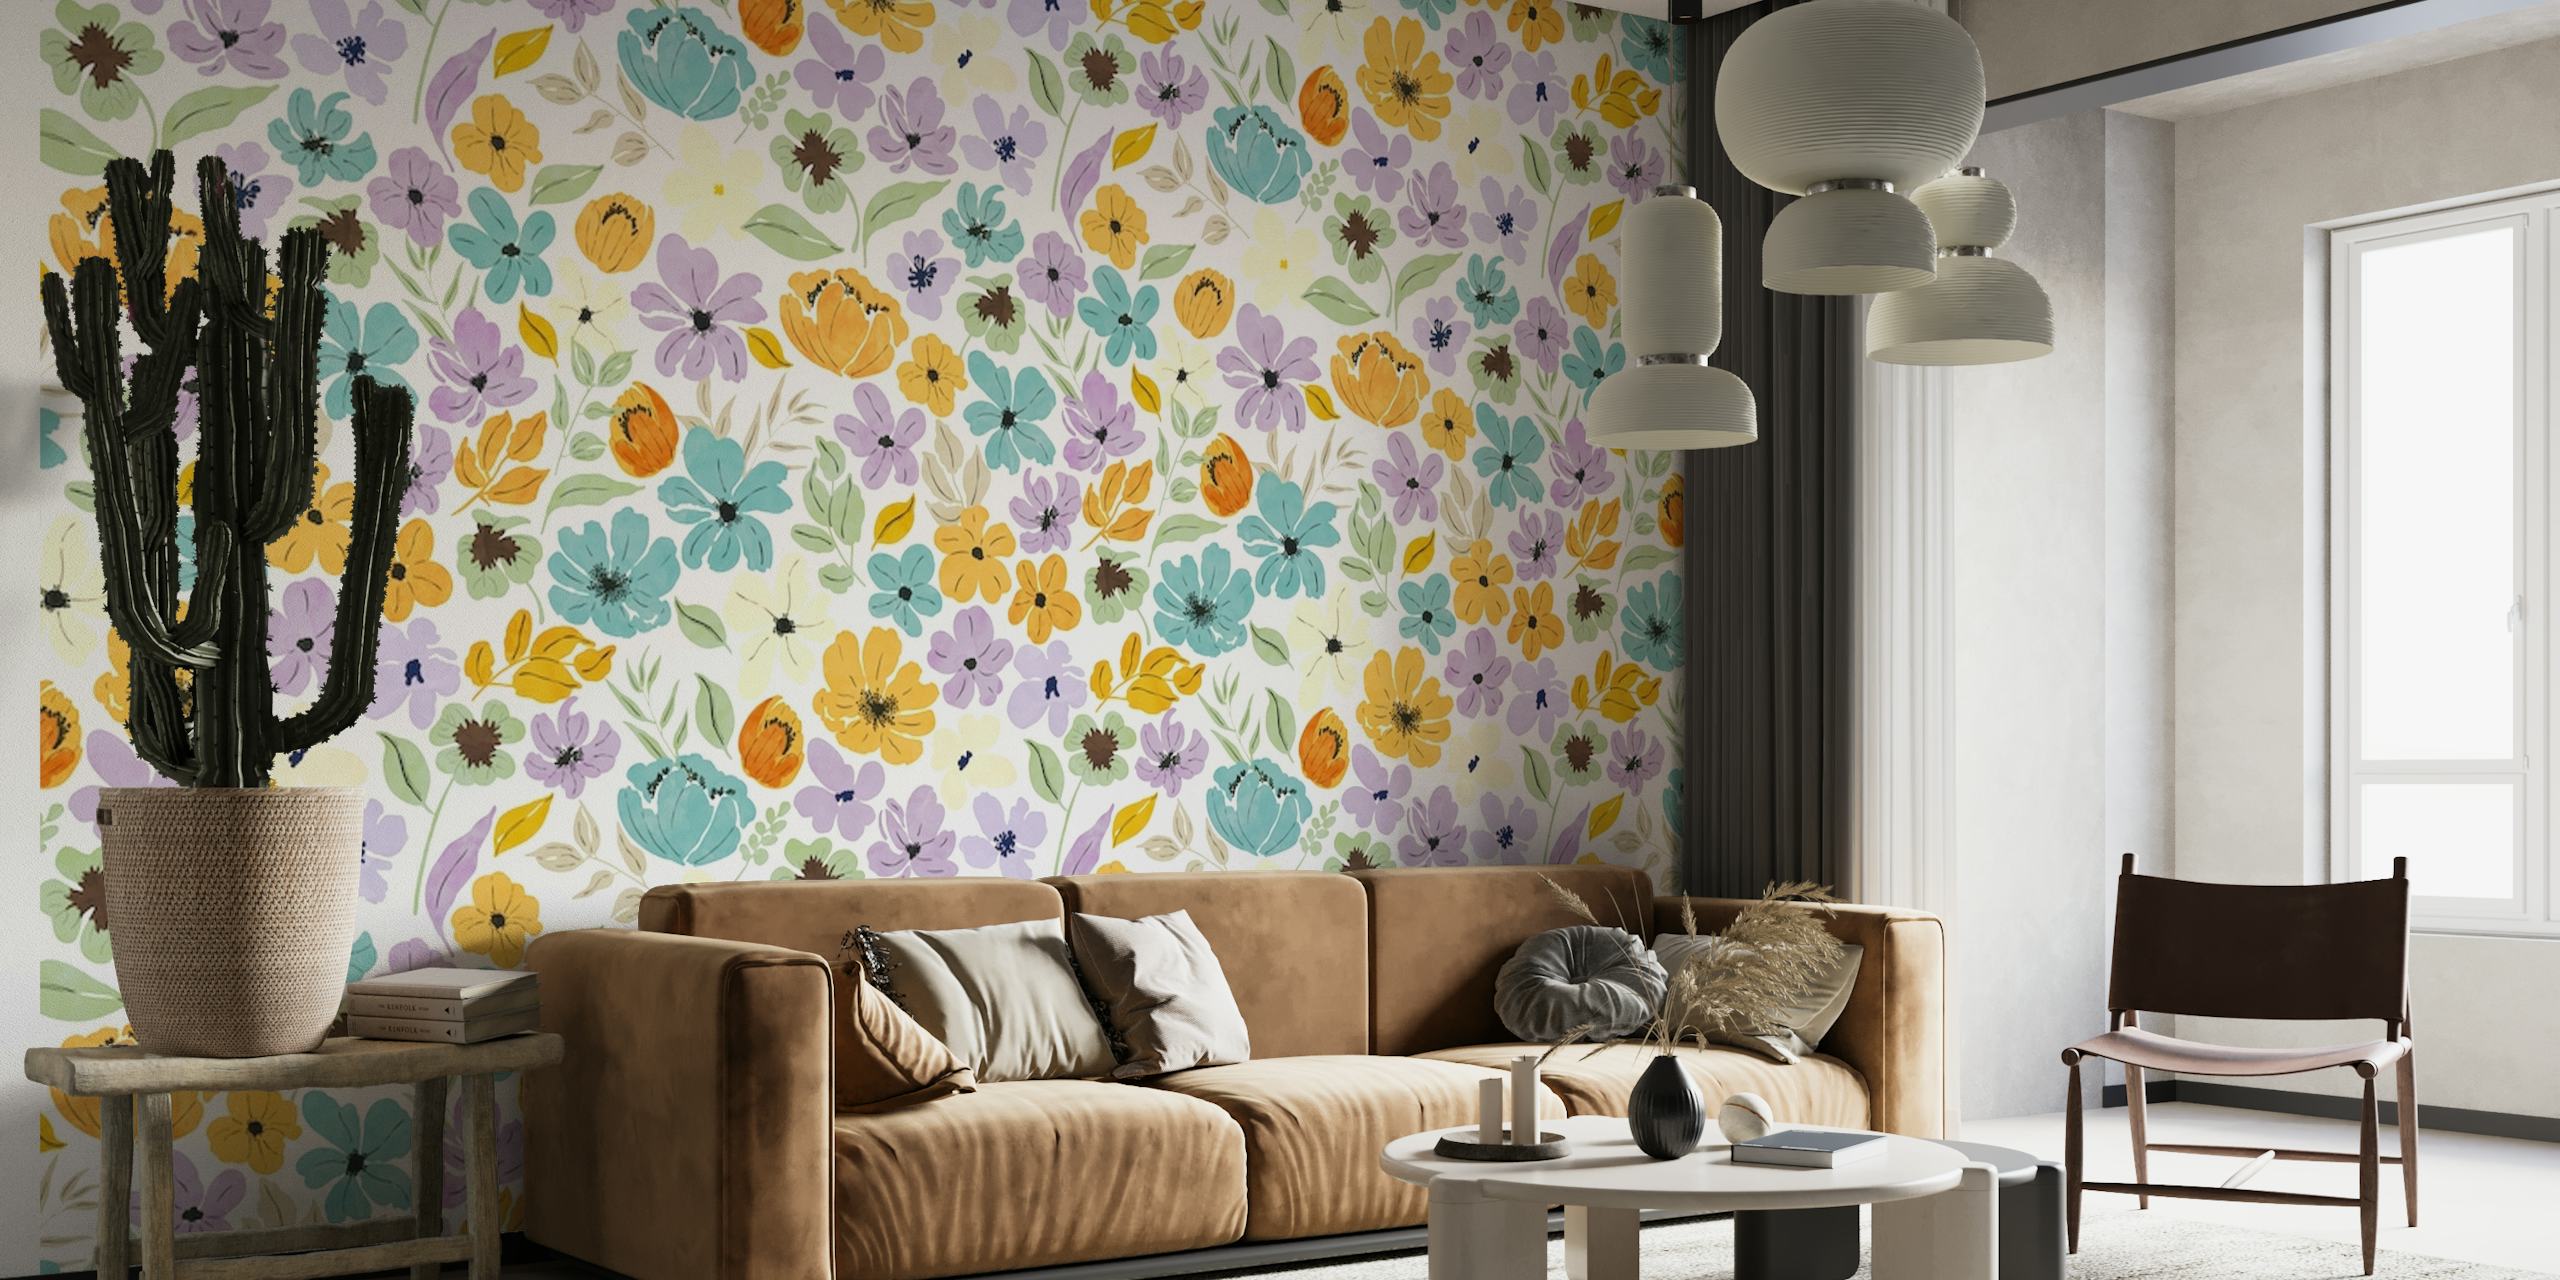 Dekoratives Wandbild mit einem floralen Muster aus gelben und violetten Blüten, durchsetzt mit grünem Laub